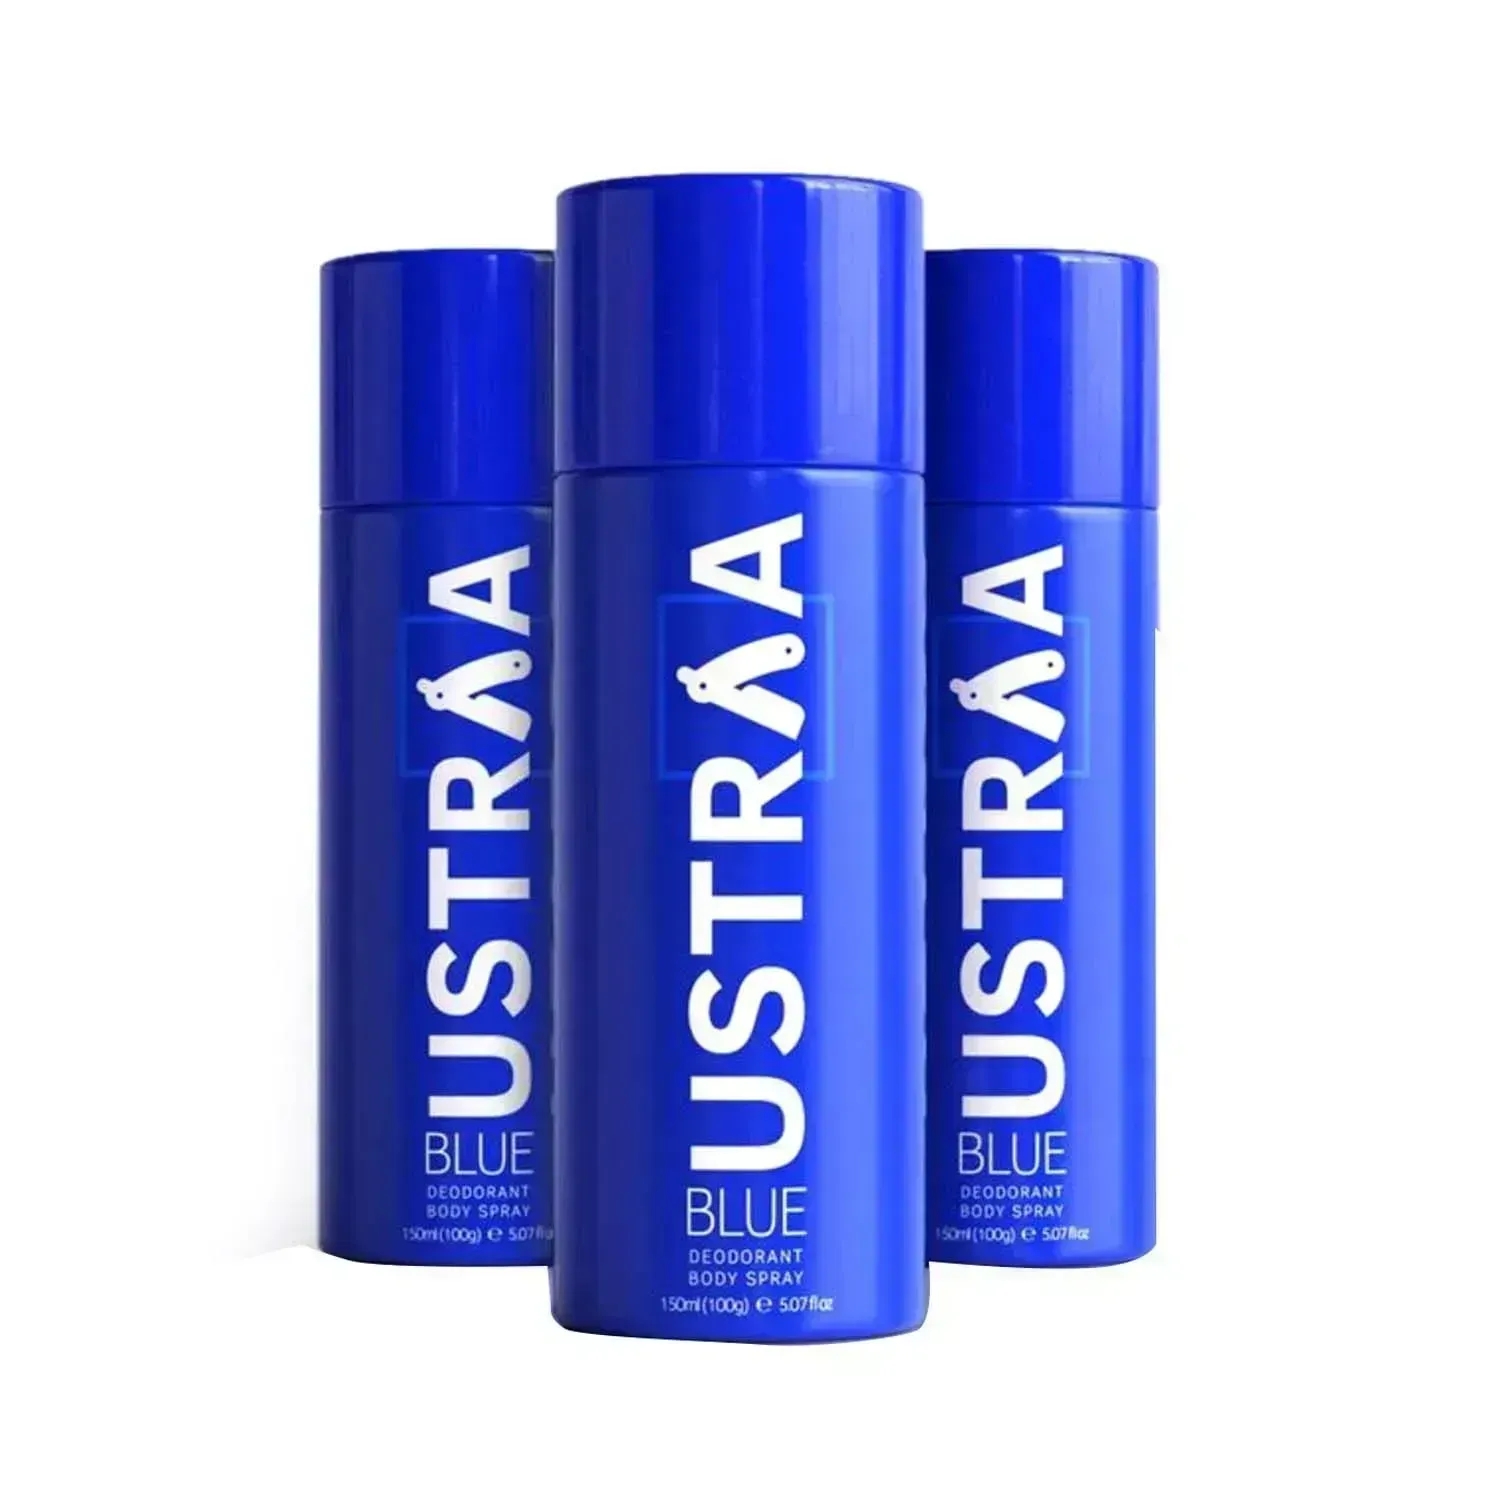 Ustraa | Ustraa Blue Deodorant Body Spray - (3 Pcs)